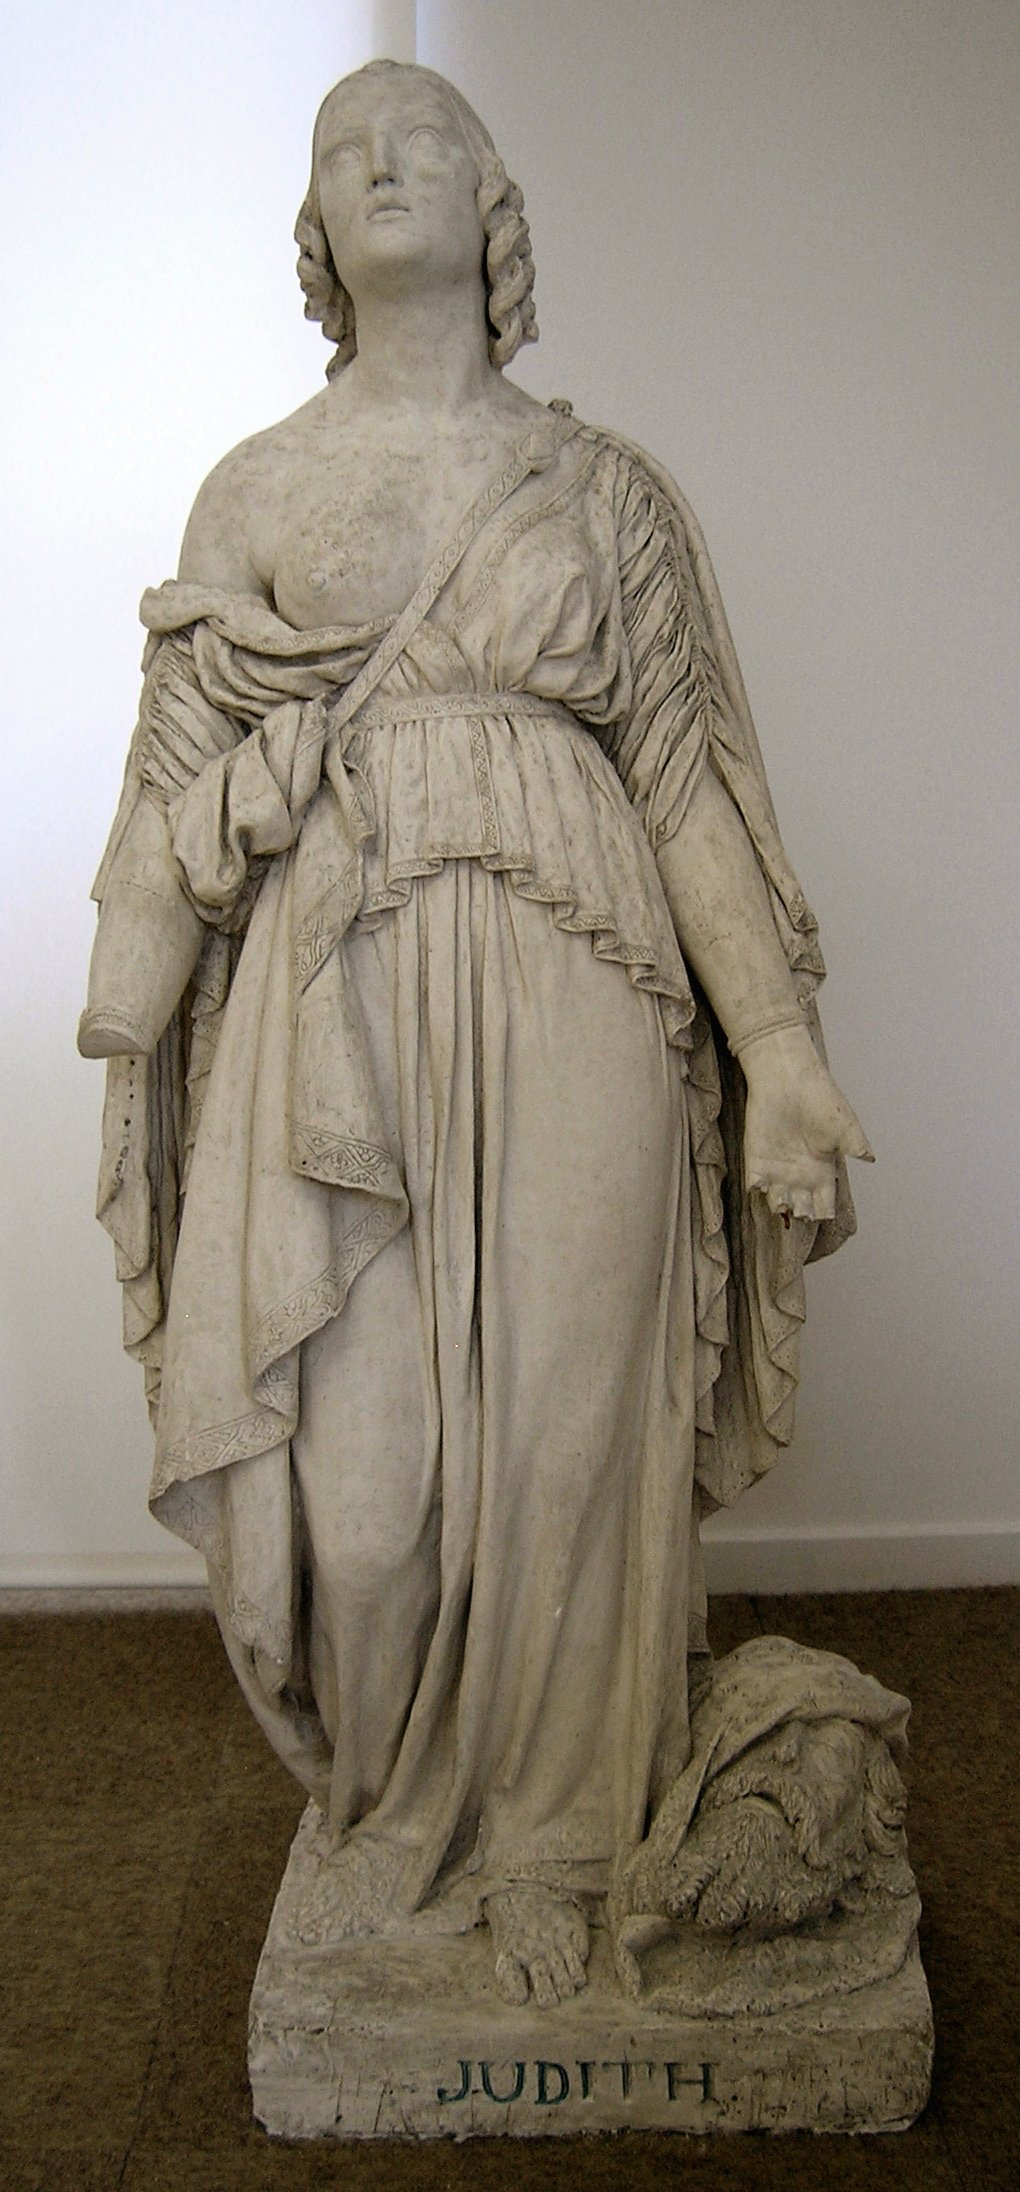 Judith, Musée d'Art et d'Histoire, Nuits St Georges